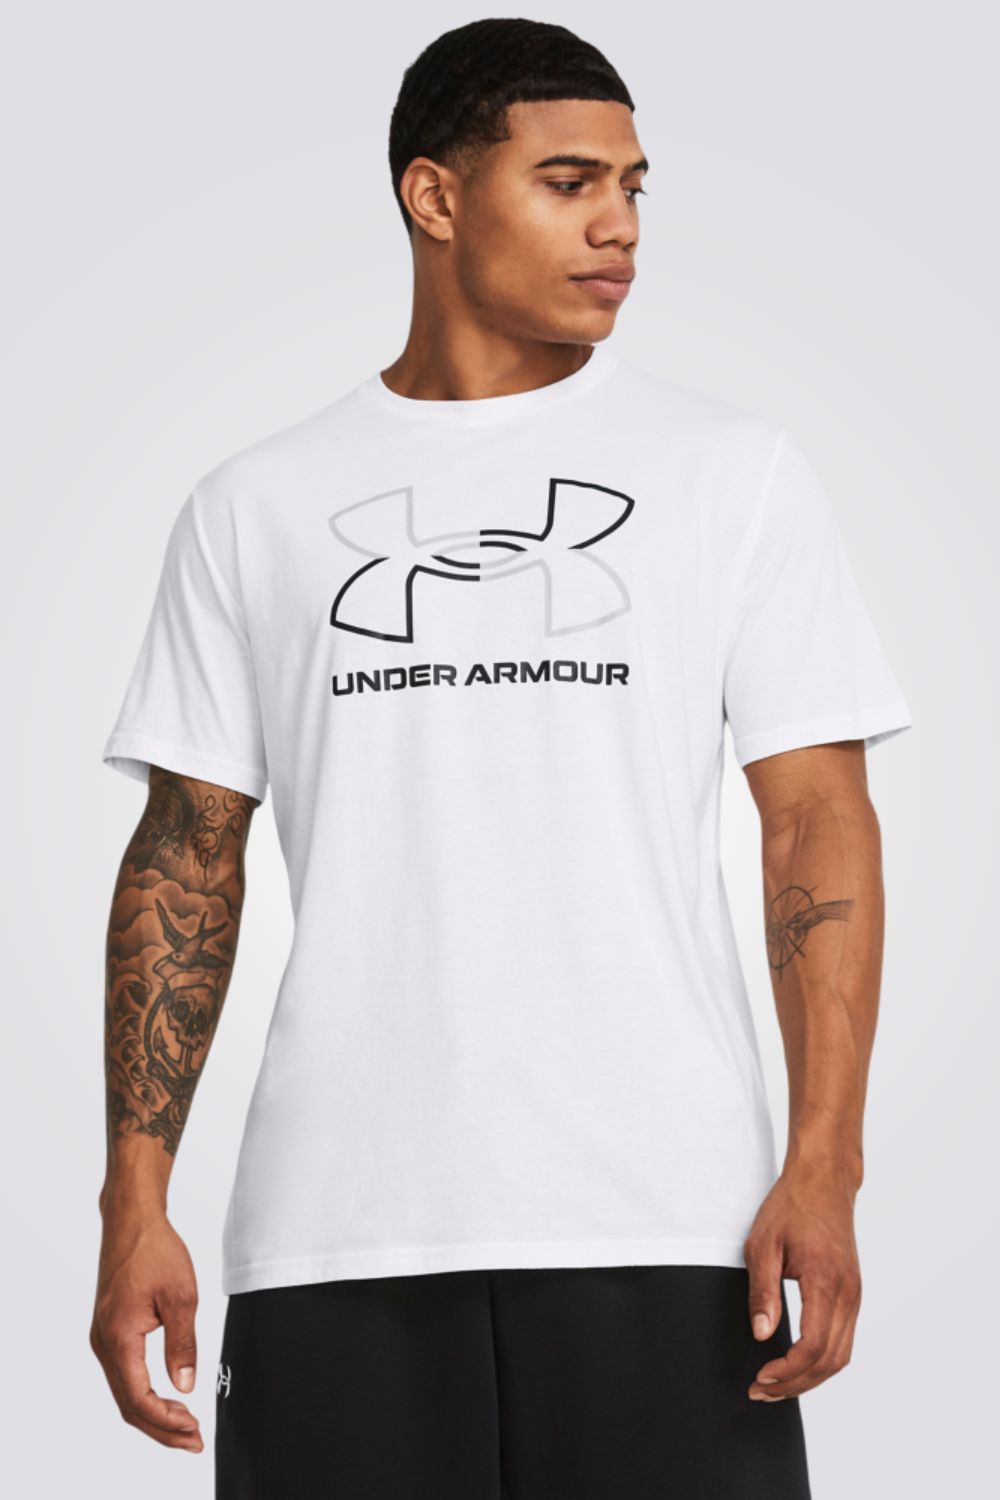 חולצה מבית המותג UNDER ARMOUR , עשויה מבד מנדף זיעה ששומר על הגוף שלך מאורר לאורך כל האימון.